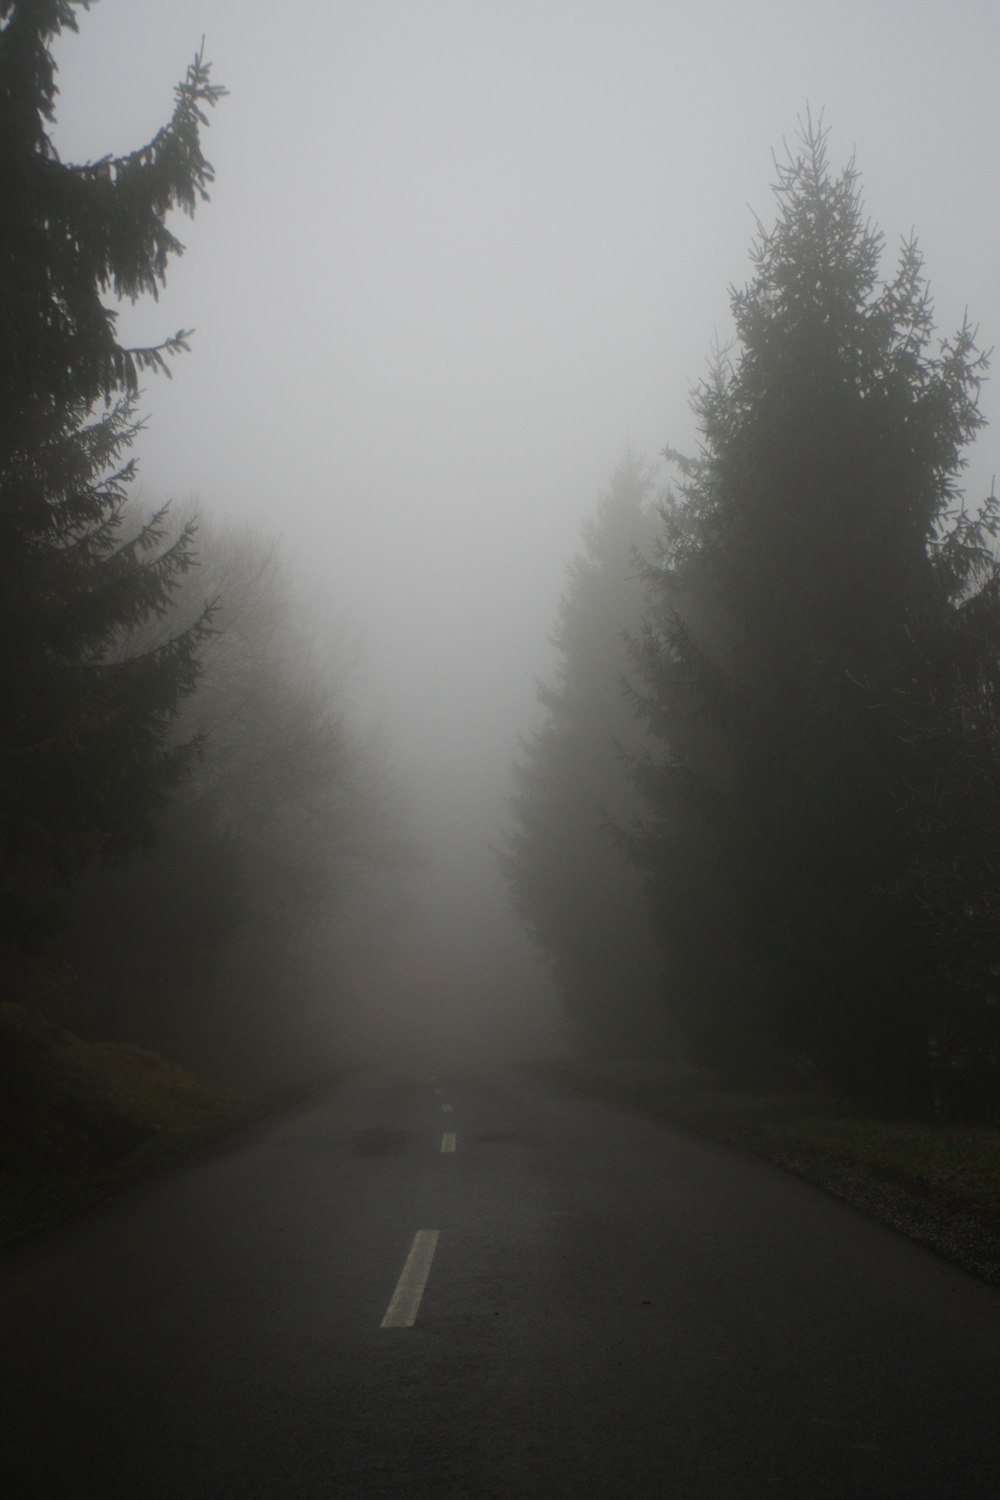 Route goudronnée grise entre les arbres verts pendant la journée brumeuse